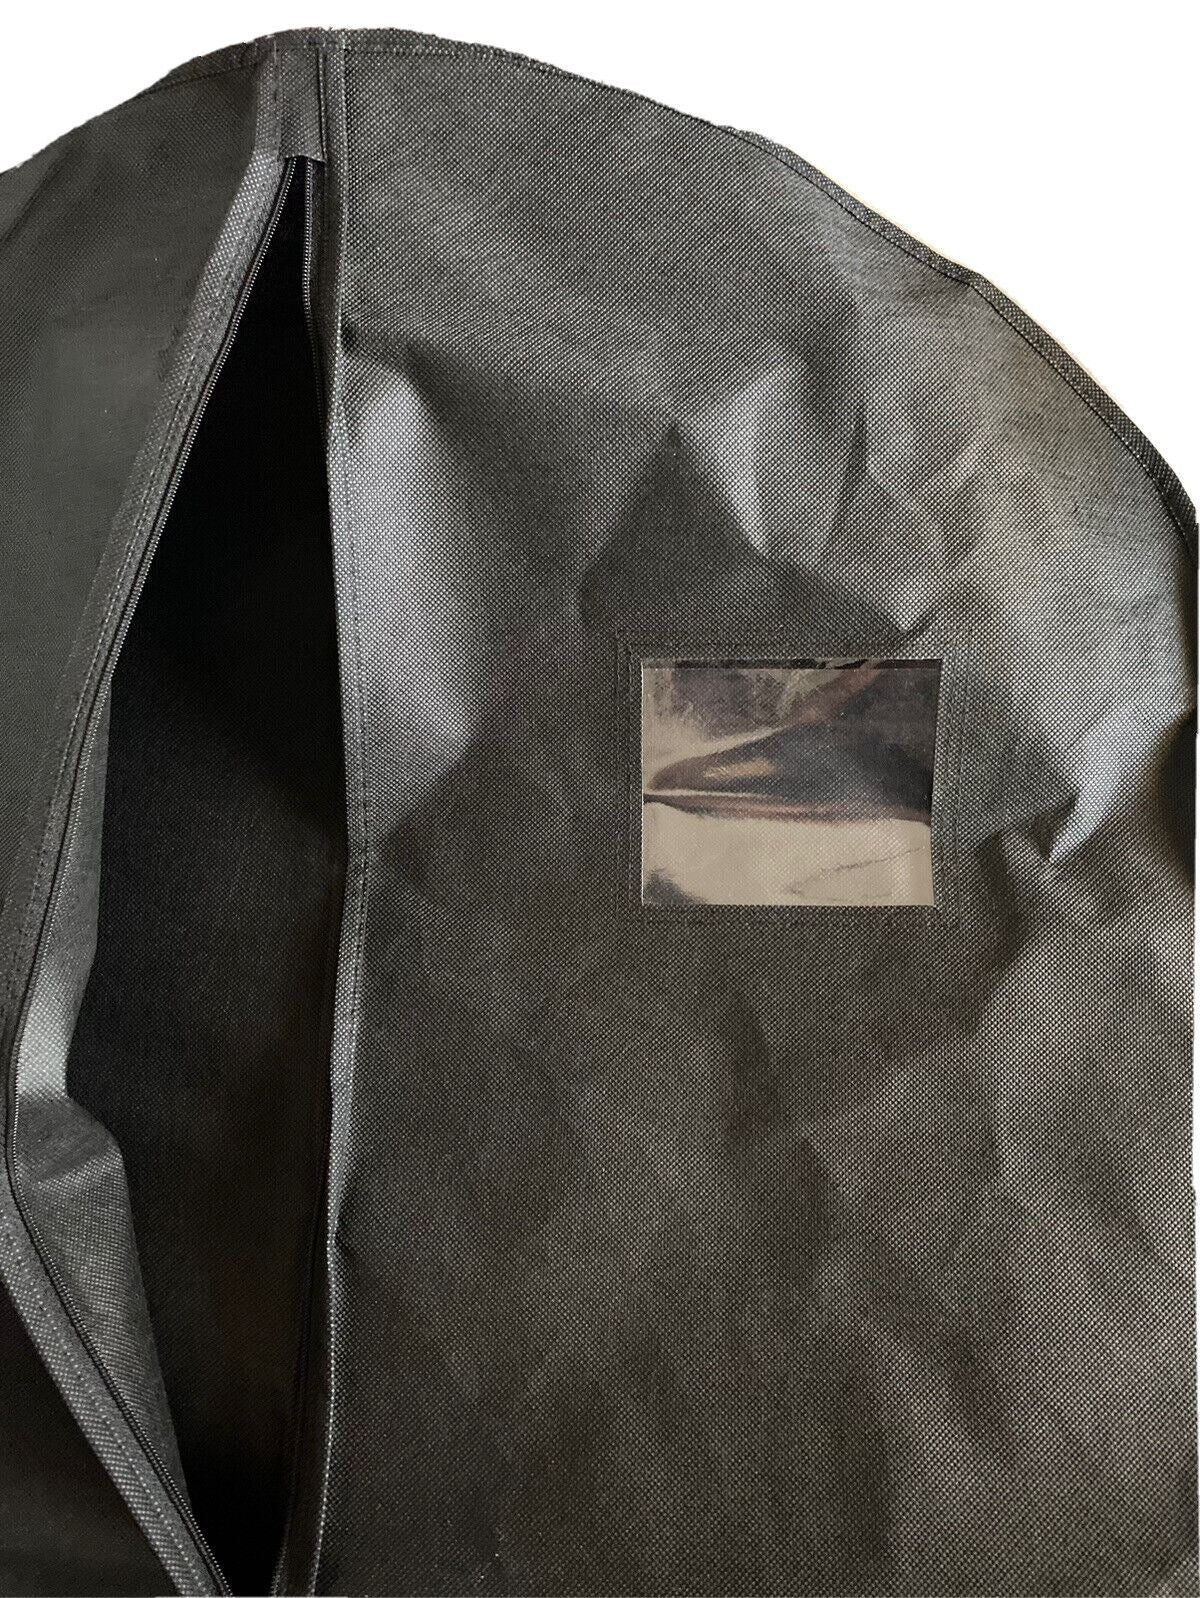 Совершенно новая сумка для одежды, черная, 40 дюймов Д x 24 дюйма Ш 